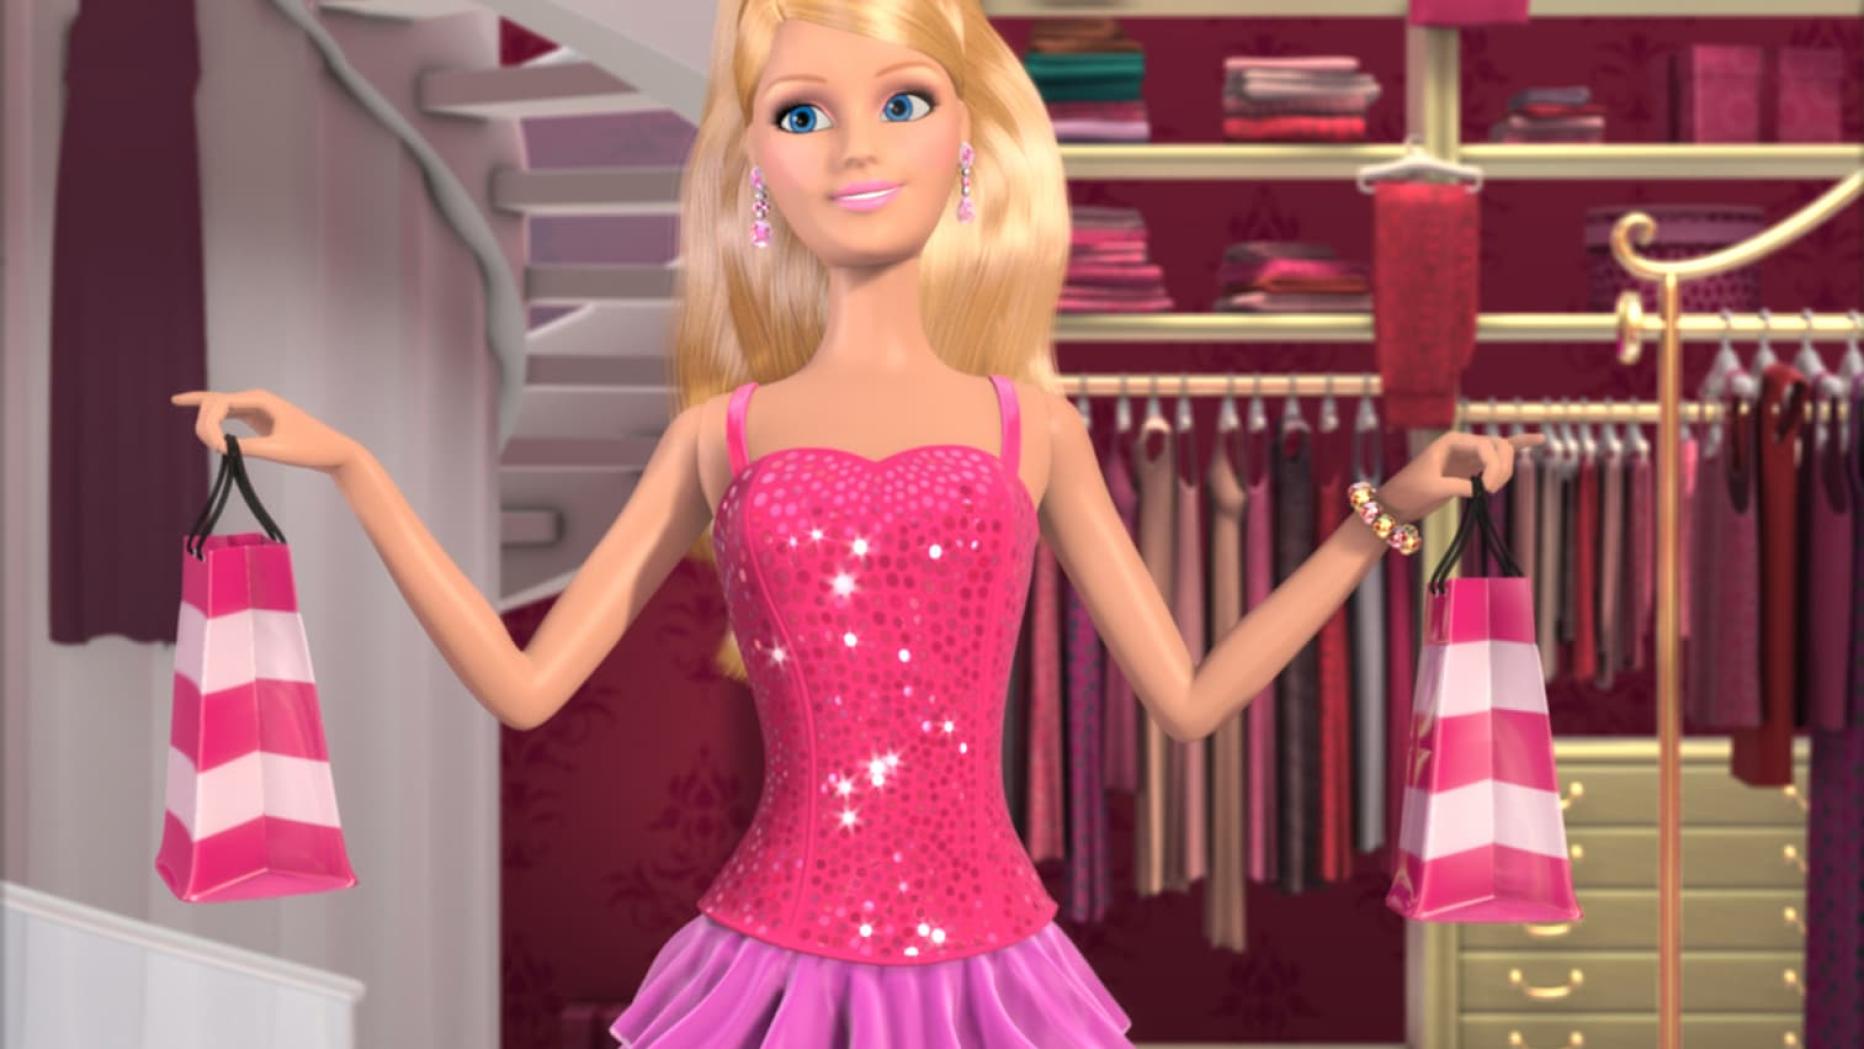 Barbiegirl. Барби Дрим Хаус игра. Барби жизнь в доме мечты игра. Барби: жизнь в доме мечты (2012). Кукла Барби жизнь в доме мечты.